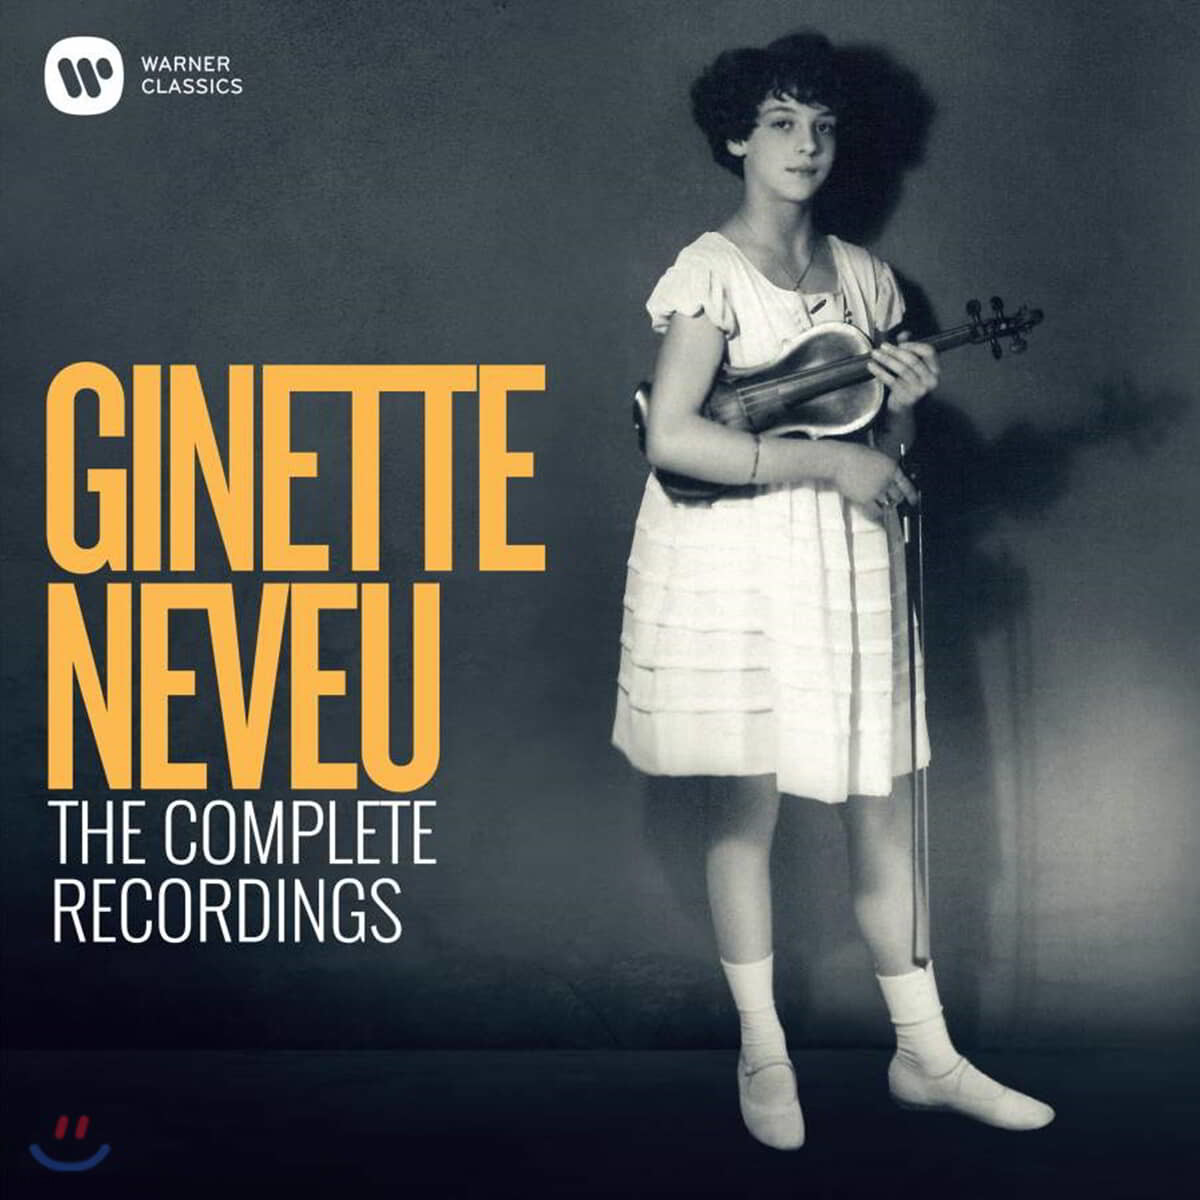 지네트 느뵈 EMI 녹음 전집 (The Complete Recorded Legacy of Ginette Neveu)